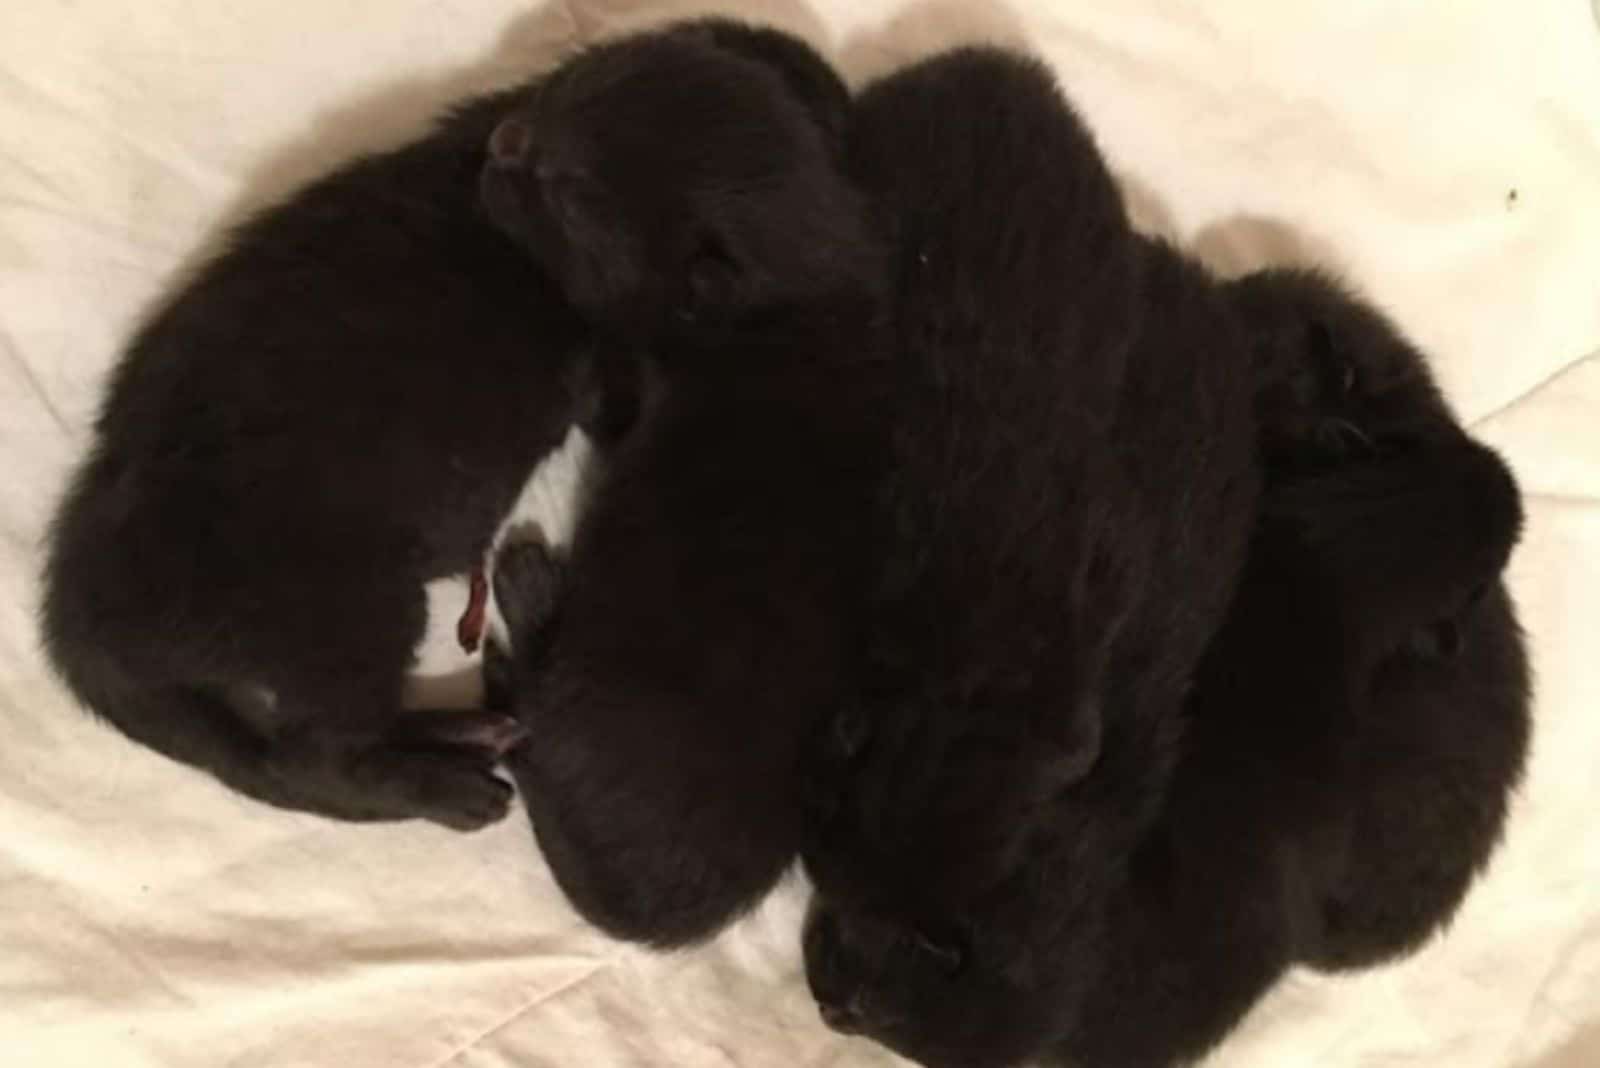 black kittens